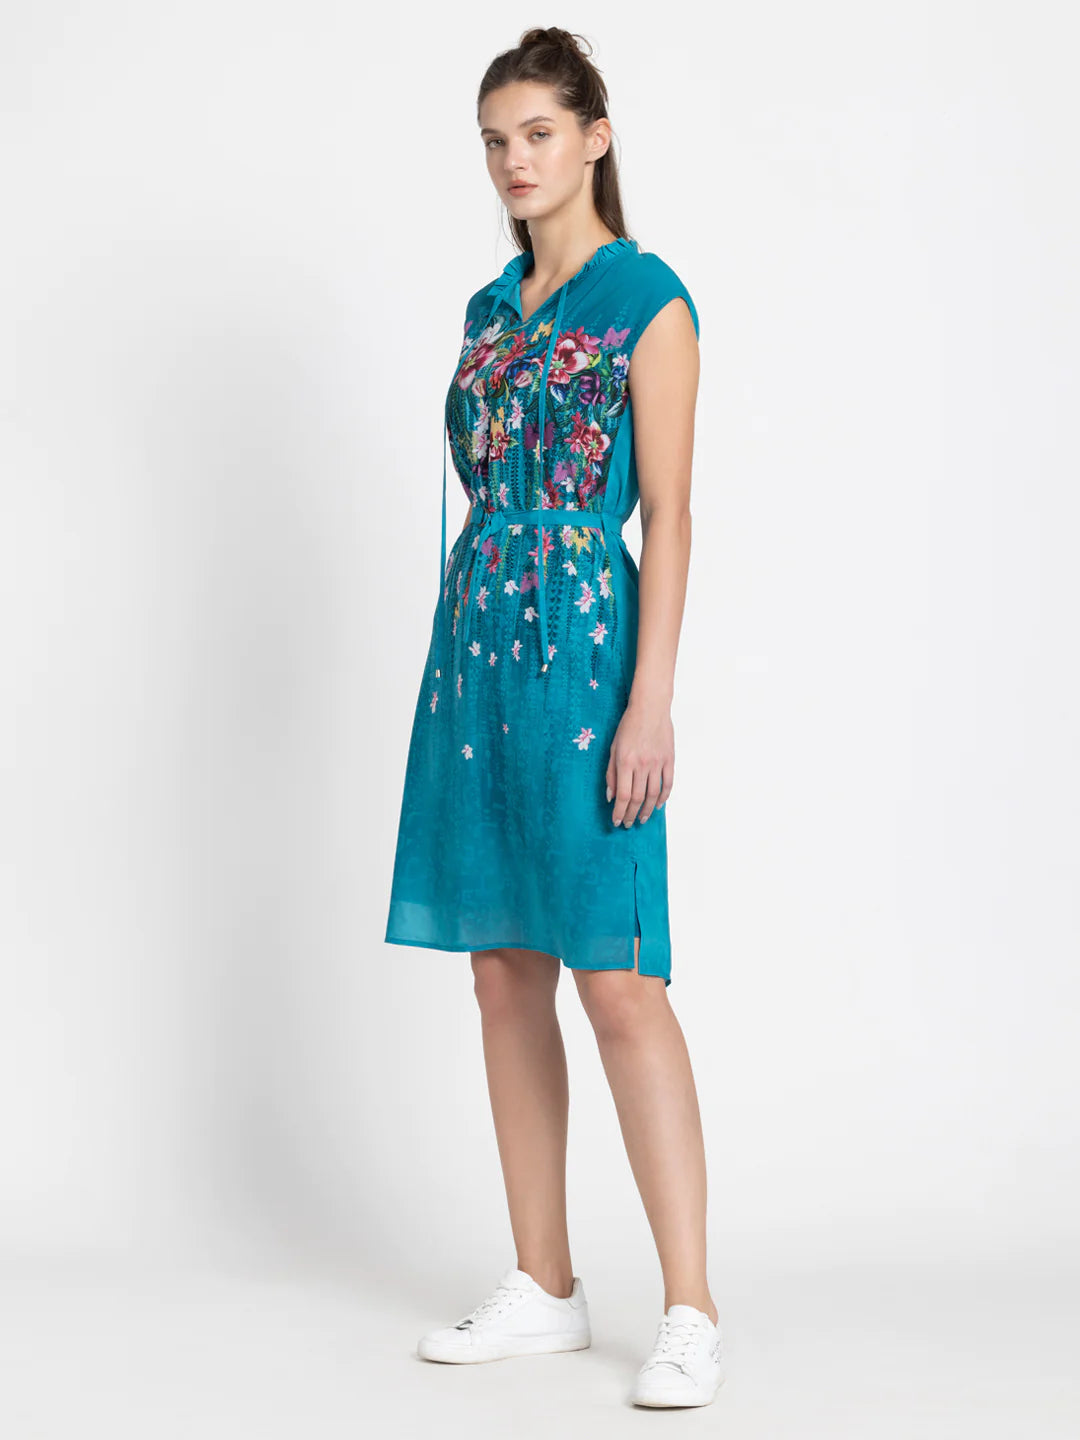 Blue Floral Dress for Women | Blue Floral Elegance Dress